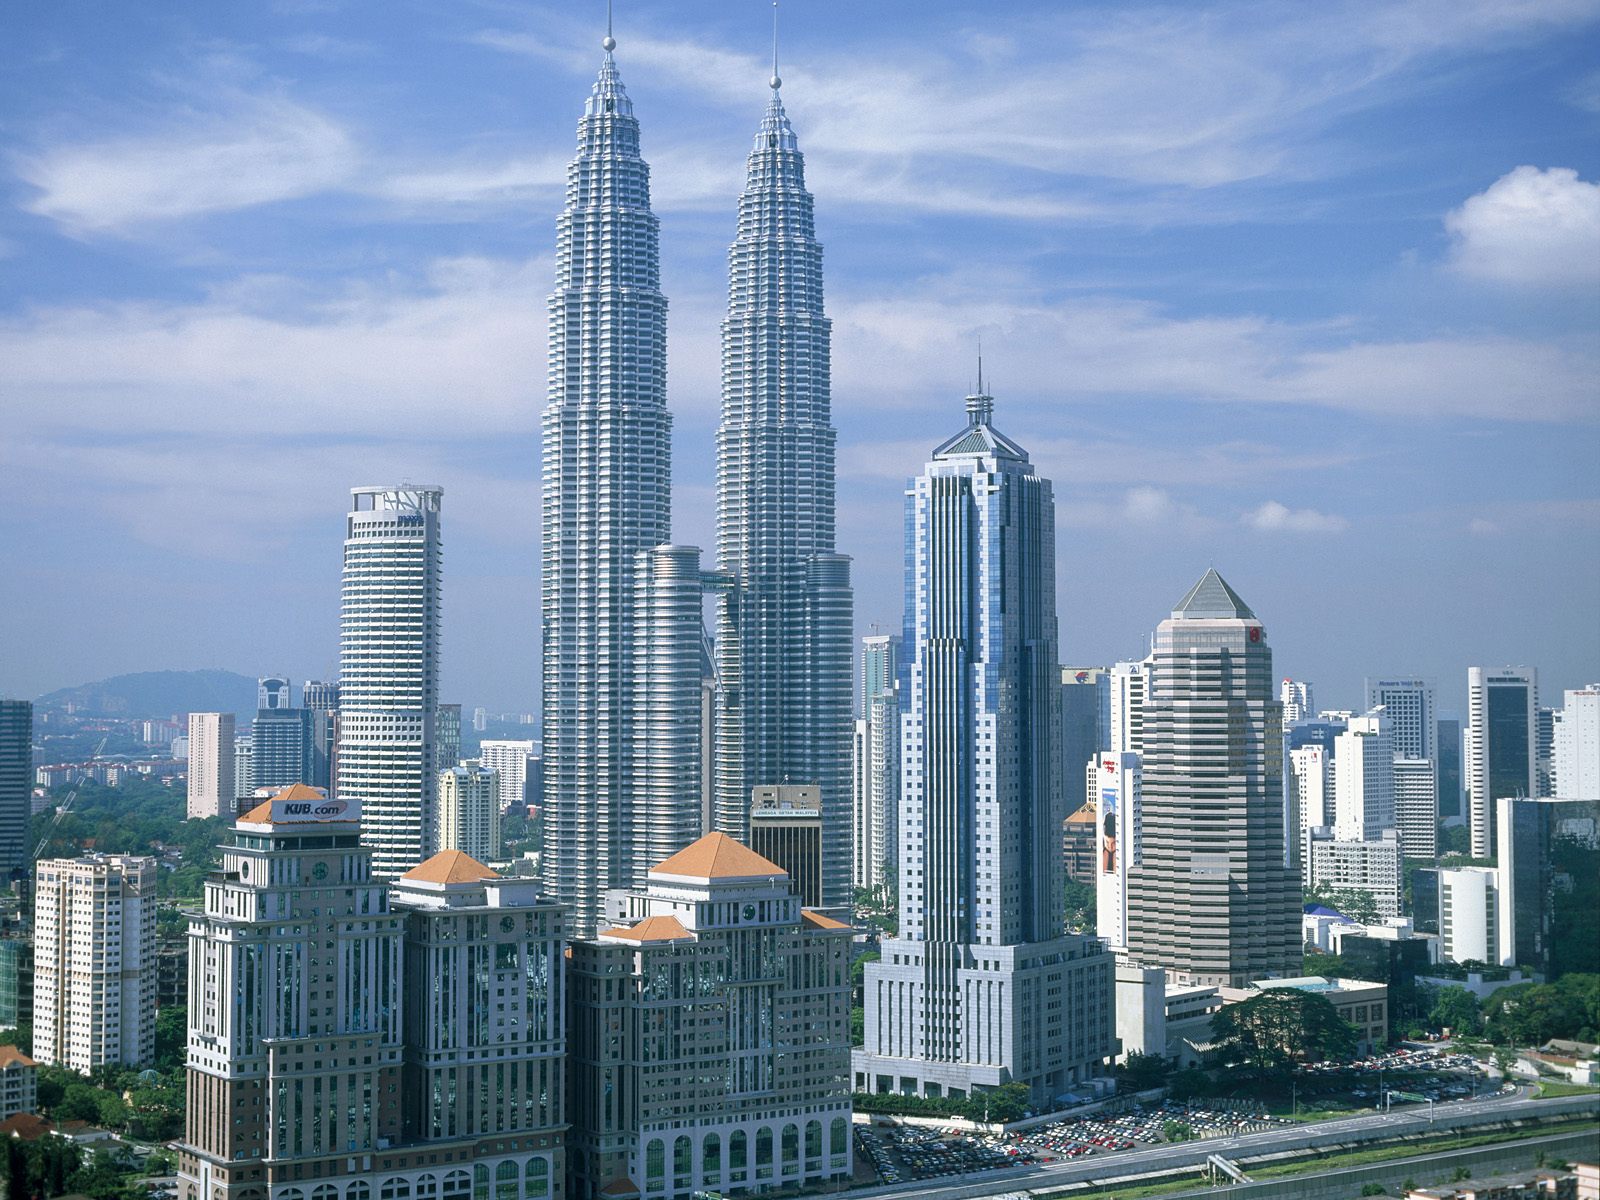 Jalan Ini: Kuala Lumpur